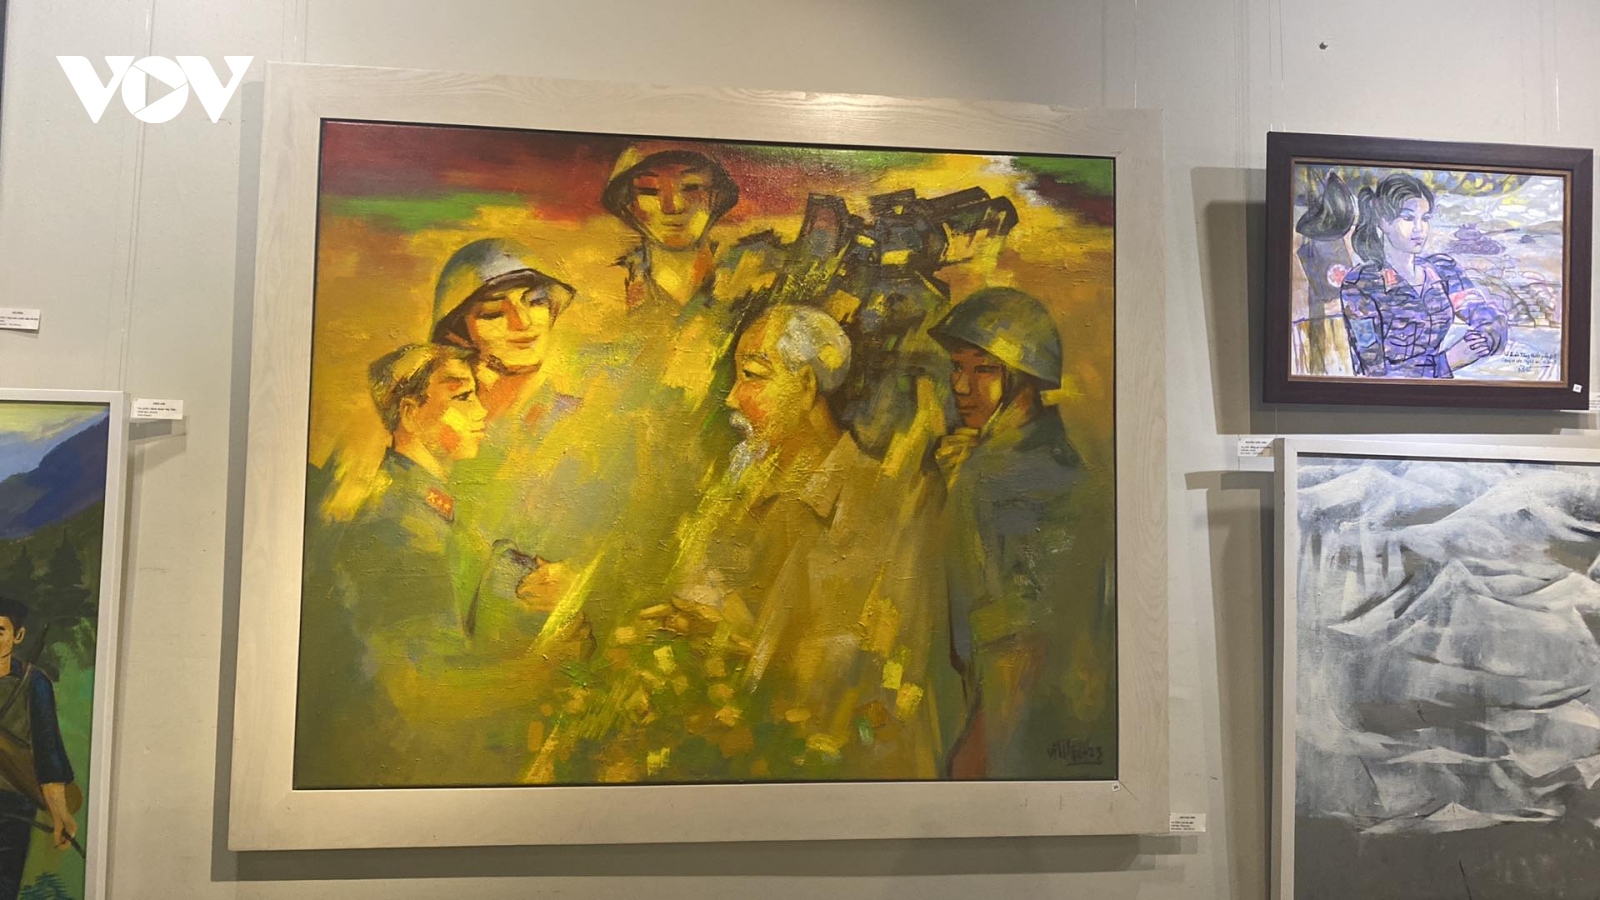 Triển lãm “Chung bước quân hành” kể nhiều câu chuyện xúc động về người chiến sĩ